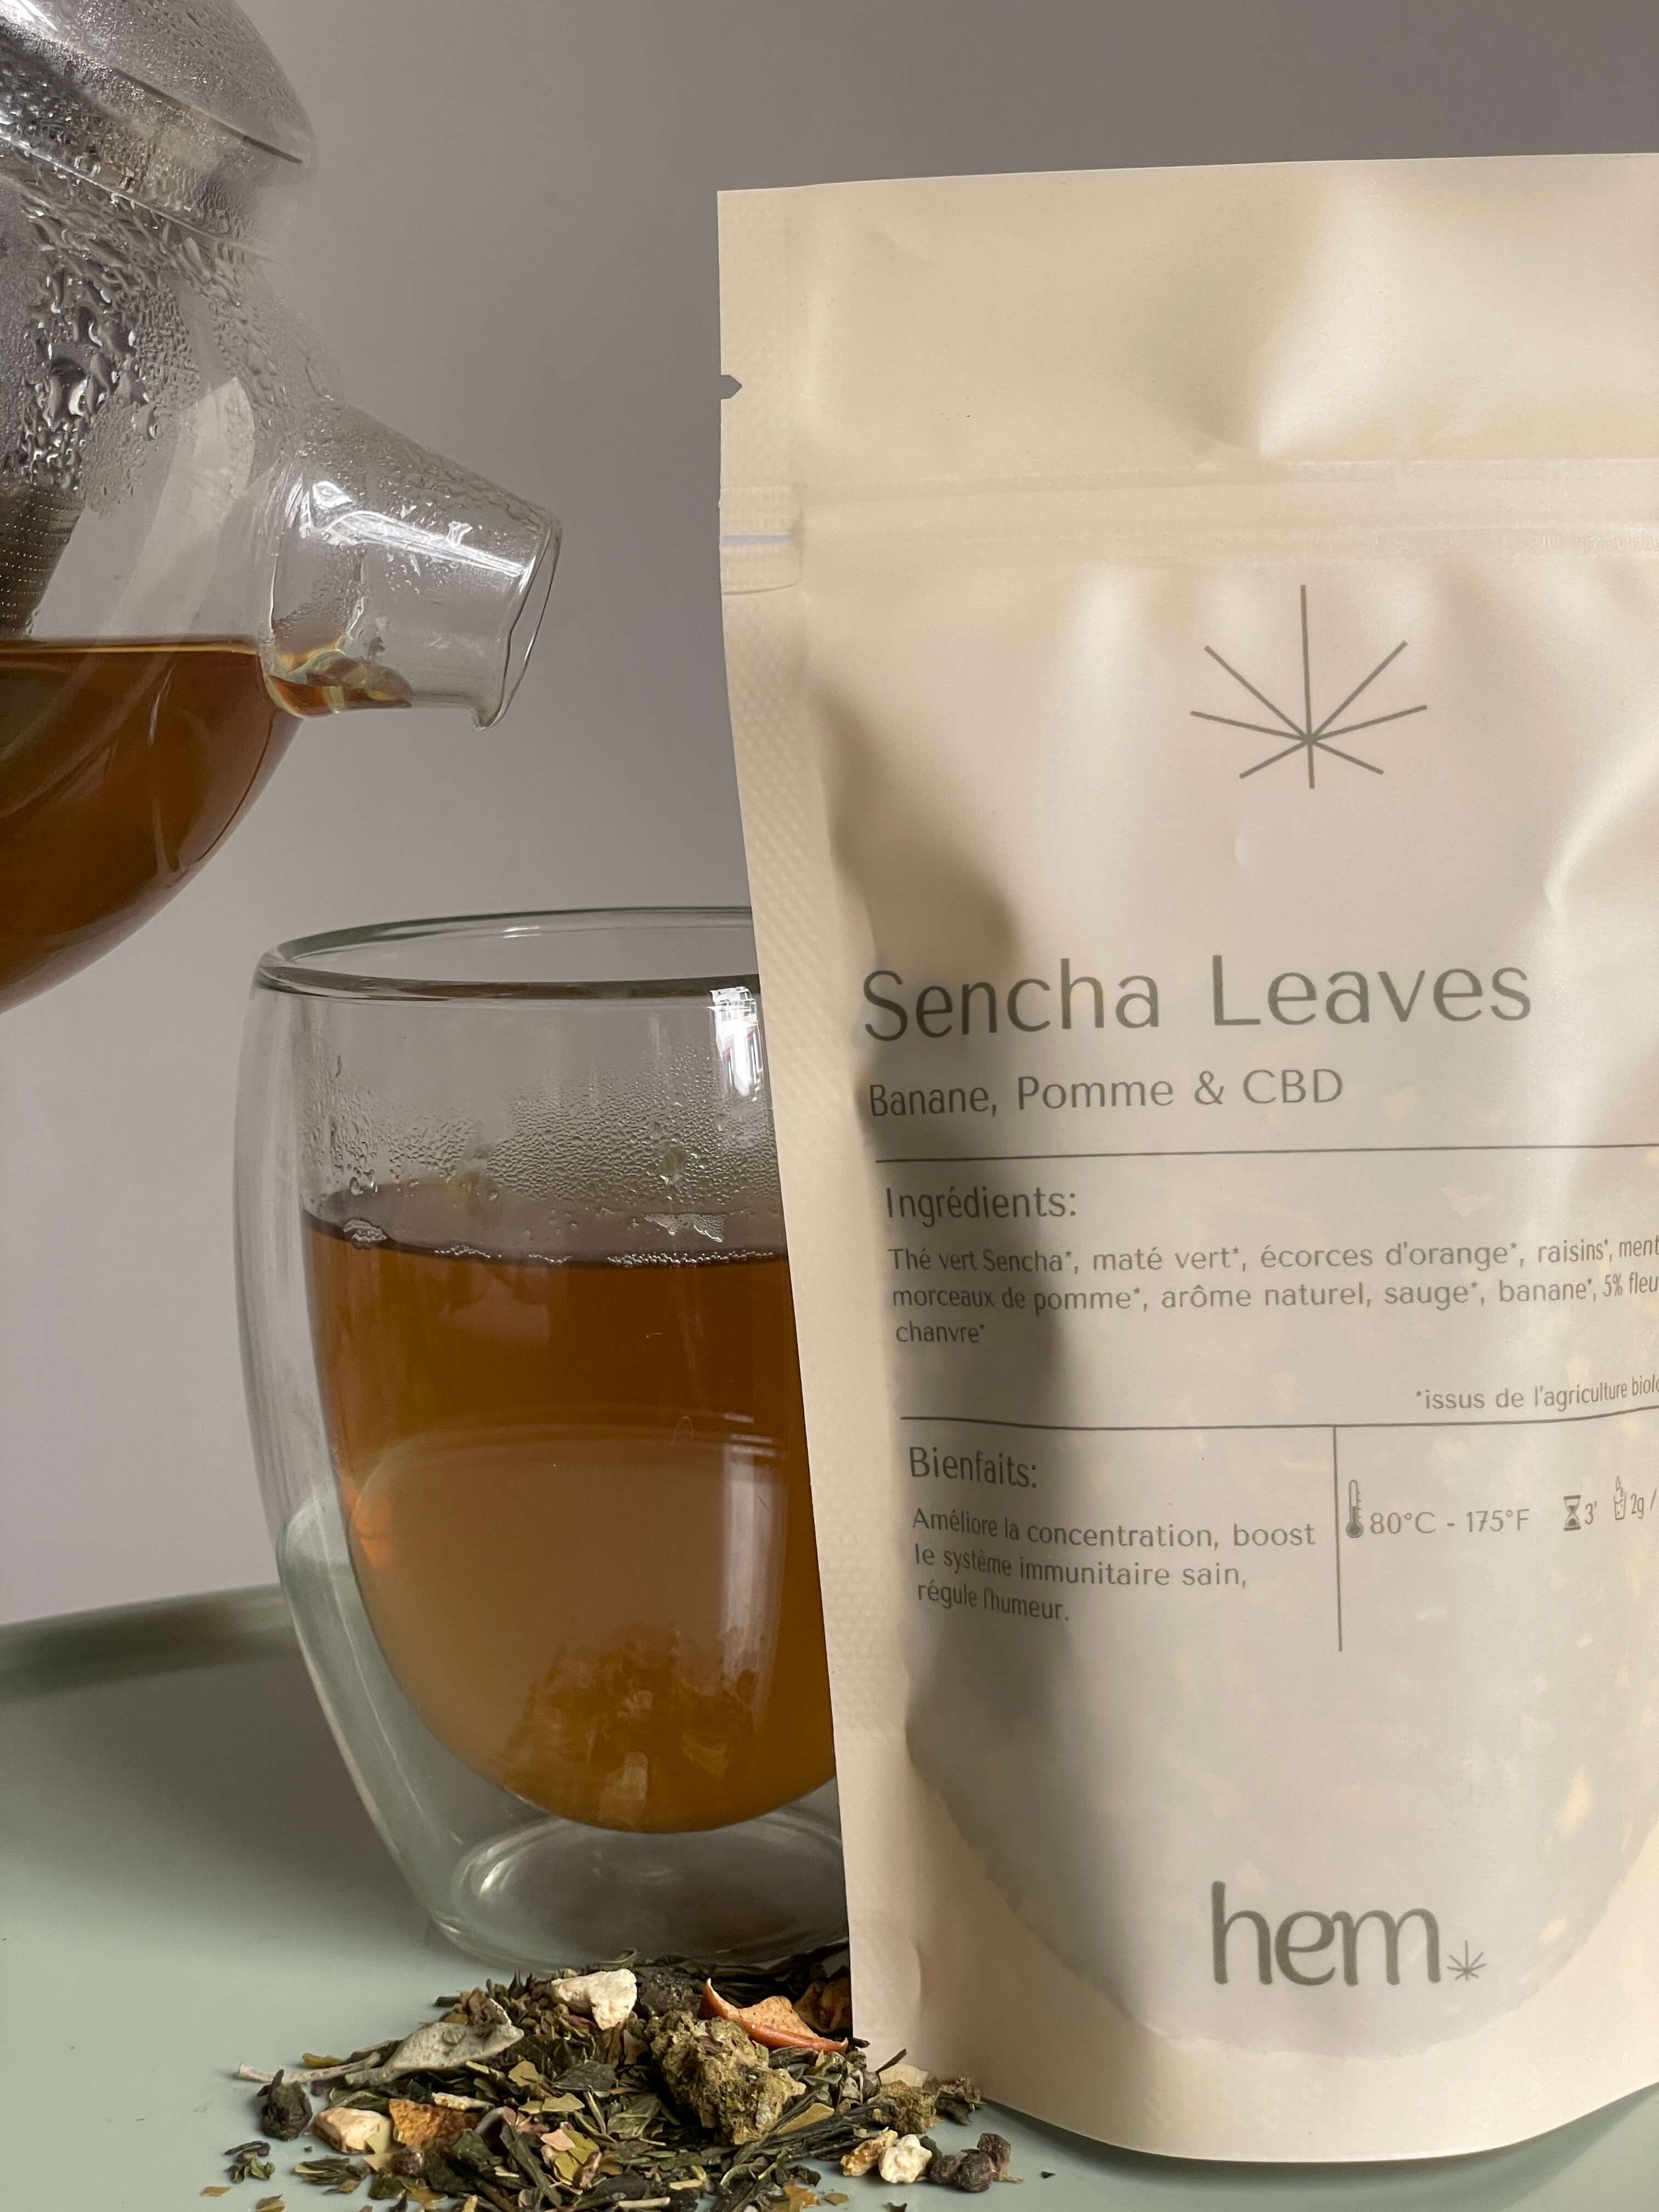 Brewed Sencha leaves and packaging HEM